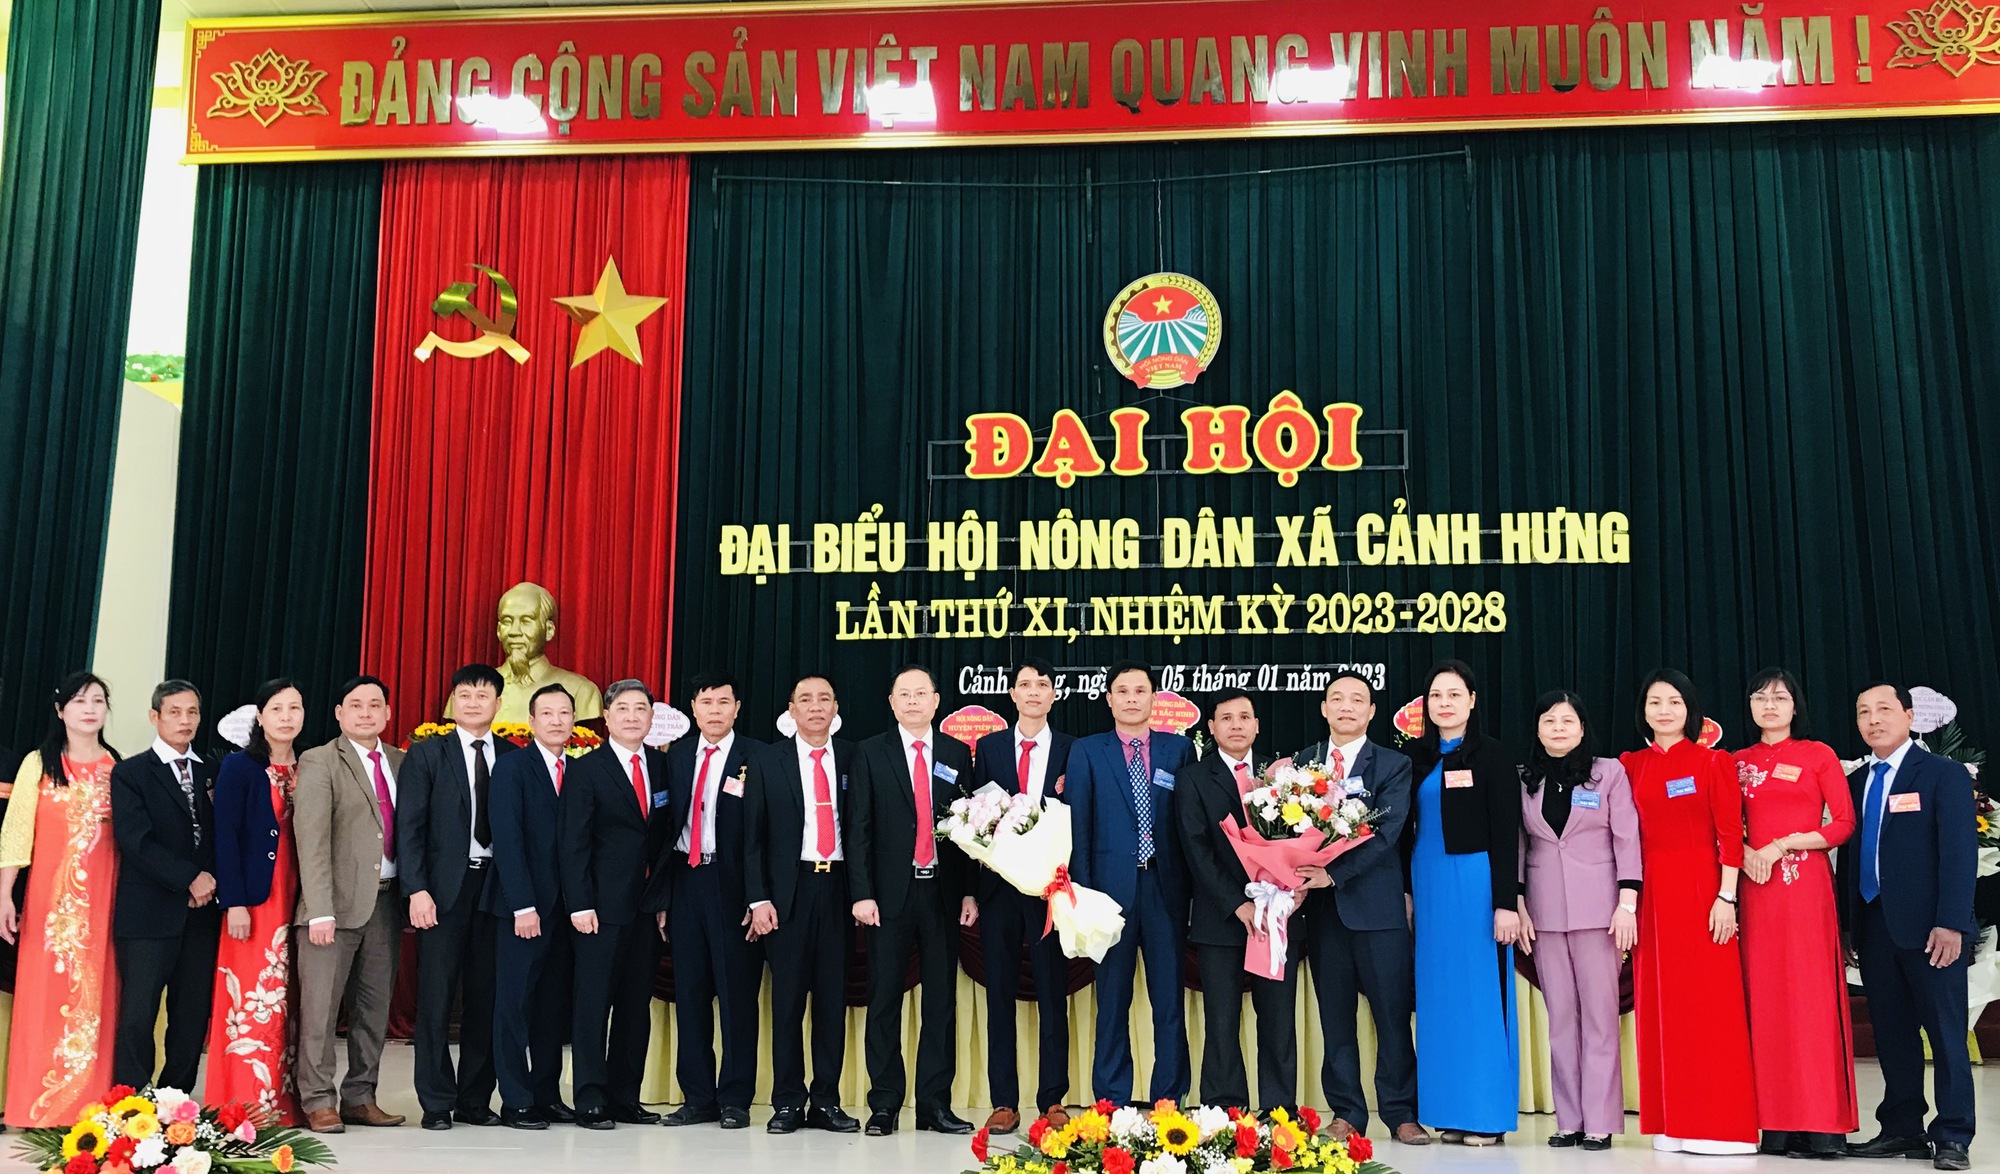 Bắc Ninh: Ghi nhận từ thành công Đại hội Hội Nông dân cấp cơ sở - Ảnh 3.